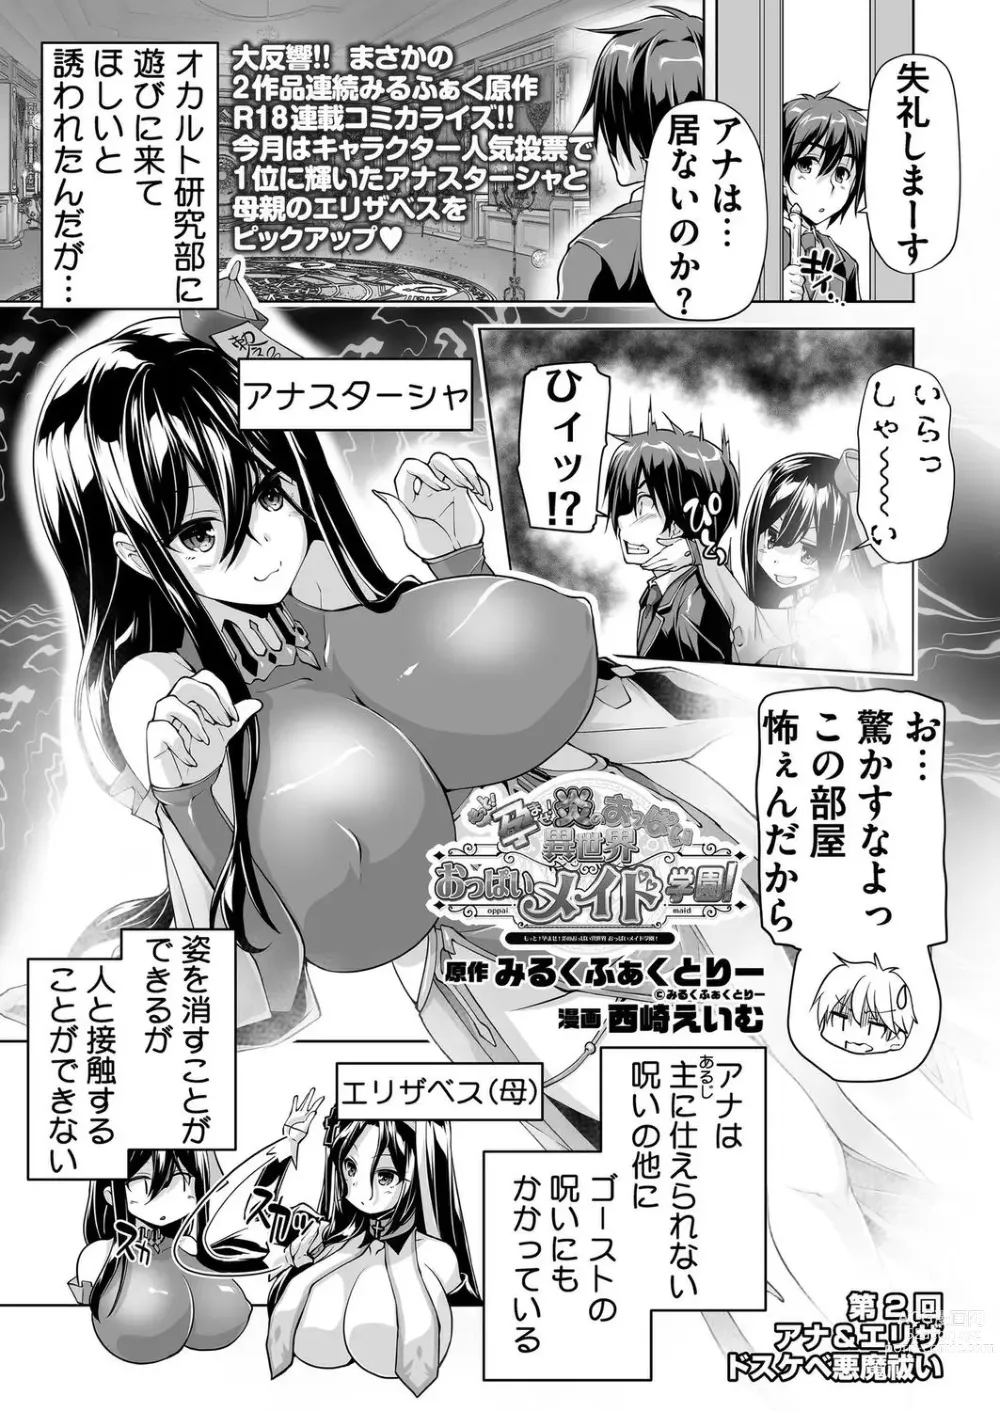 Page 175 of manga BugBug 2023-10